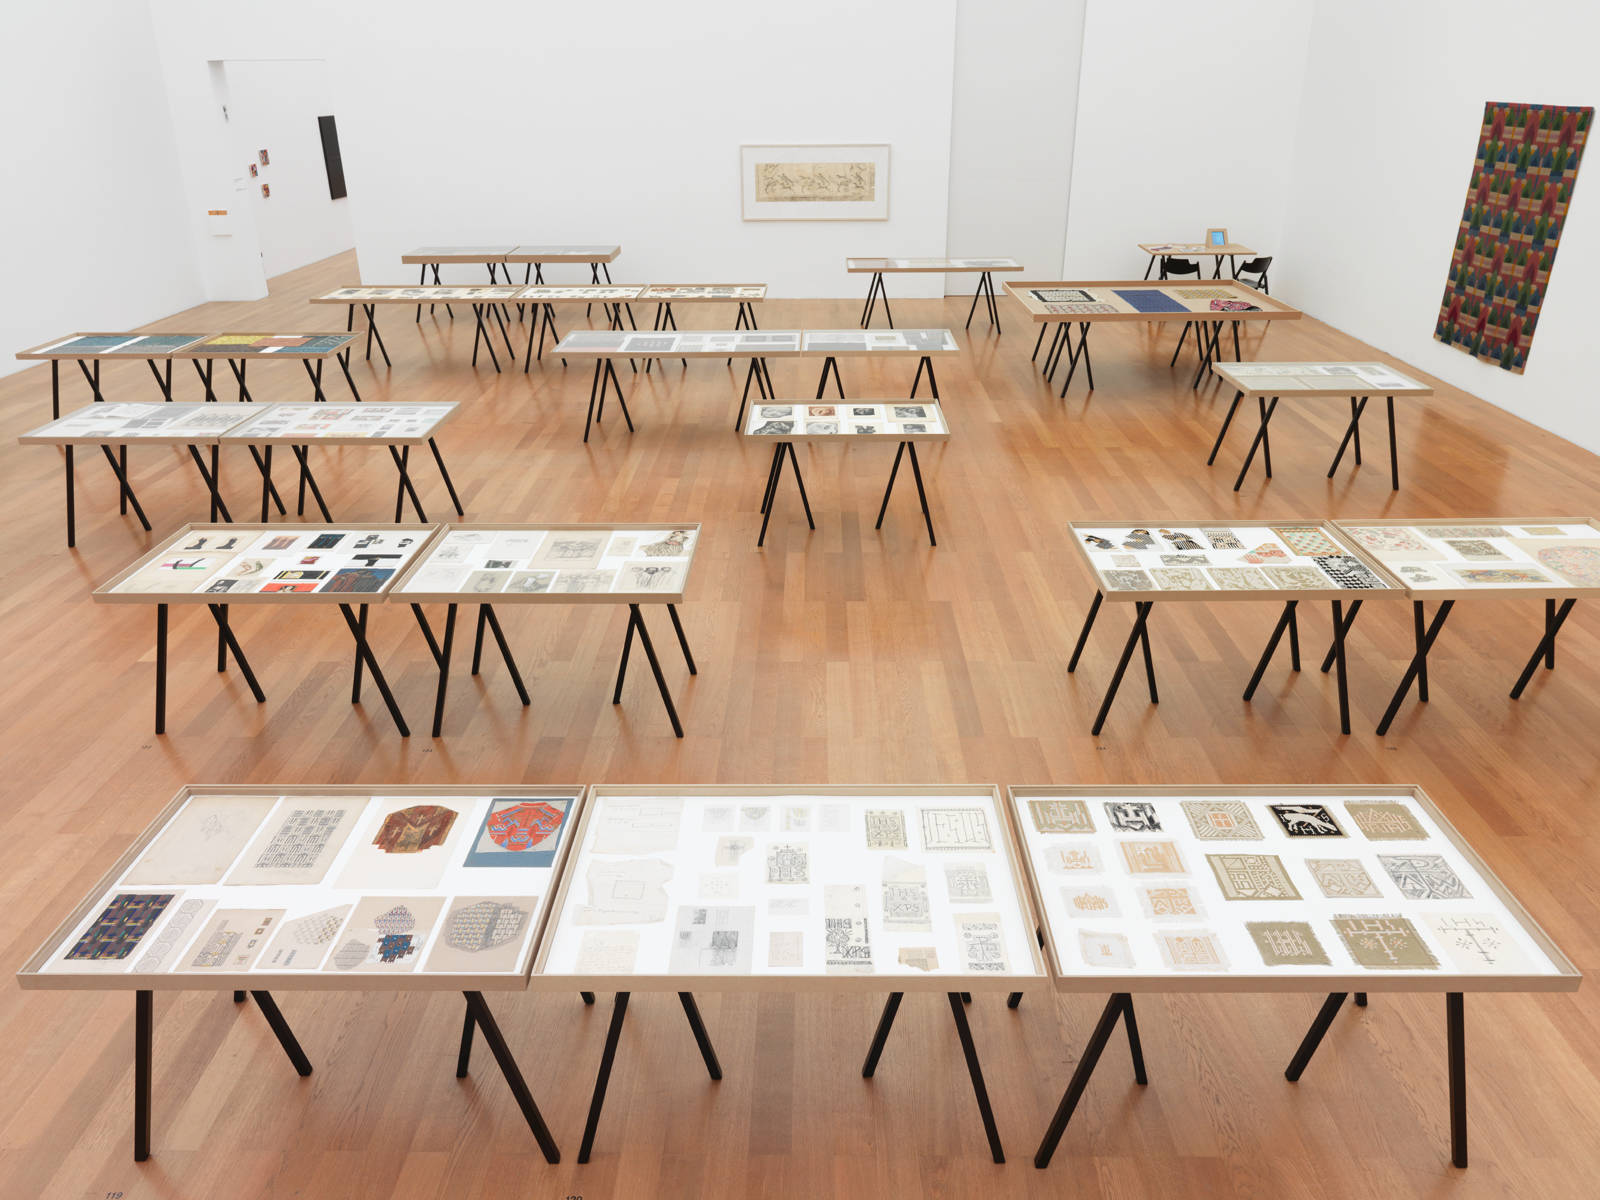 Ferdinand Nigg / "Gestrickte Moderne", exhibition view, Kunstmuseum Liechtenstein, Vaduz / 2015